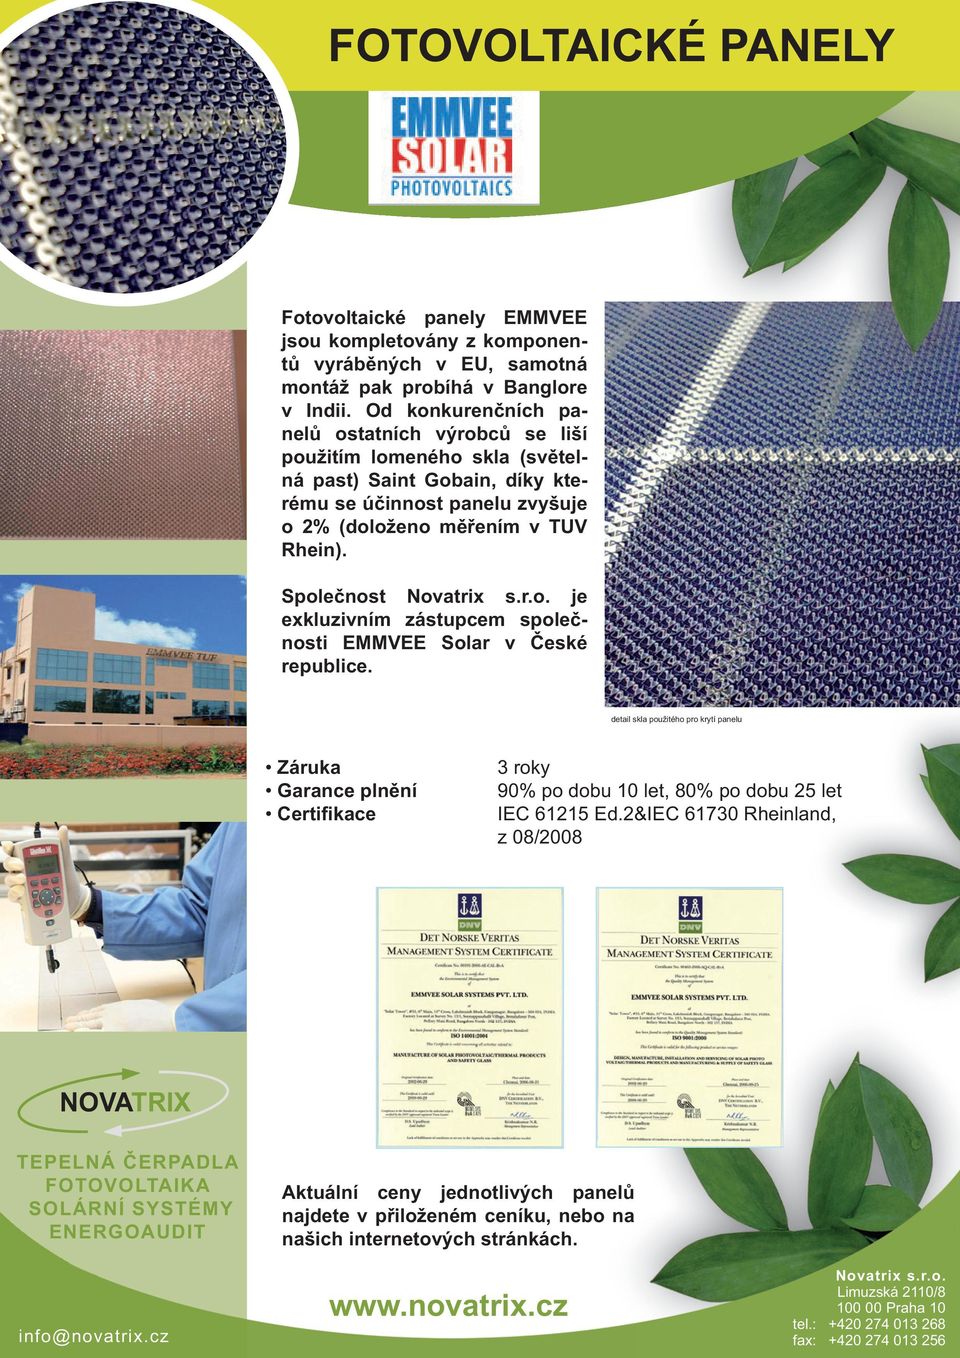 Společnost Novatrix s.r.o. je exkluzivním zástupcem společnosti EMMEE Solar v České republice.